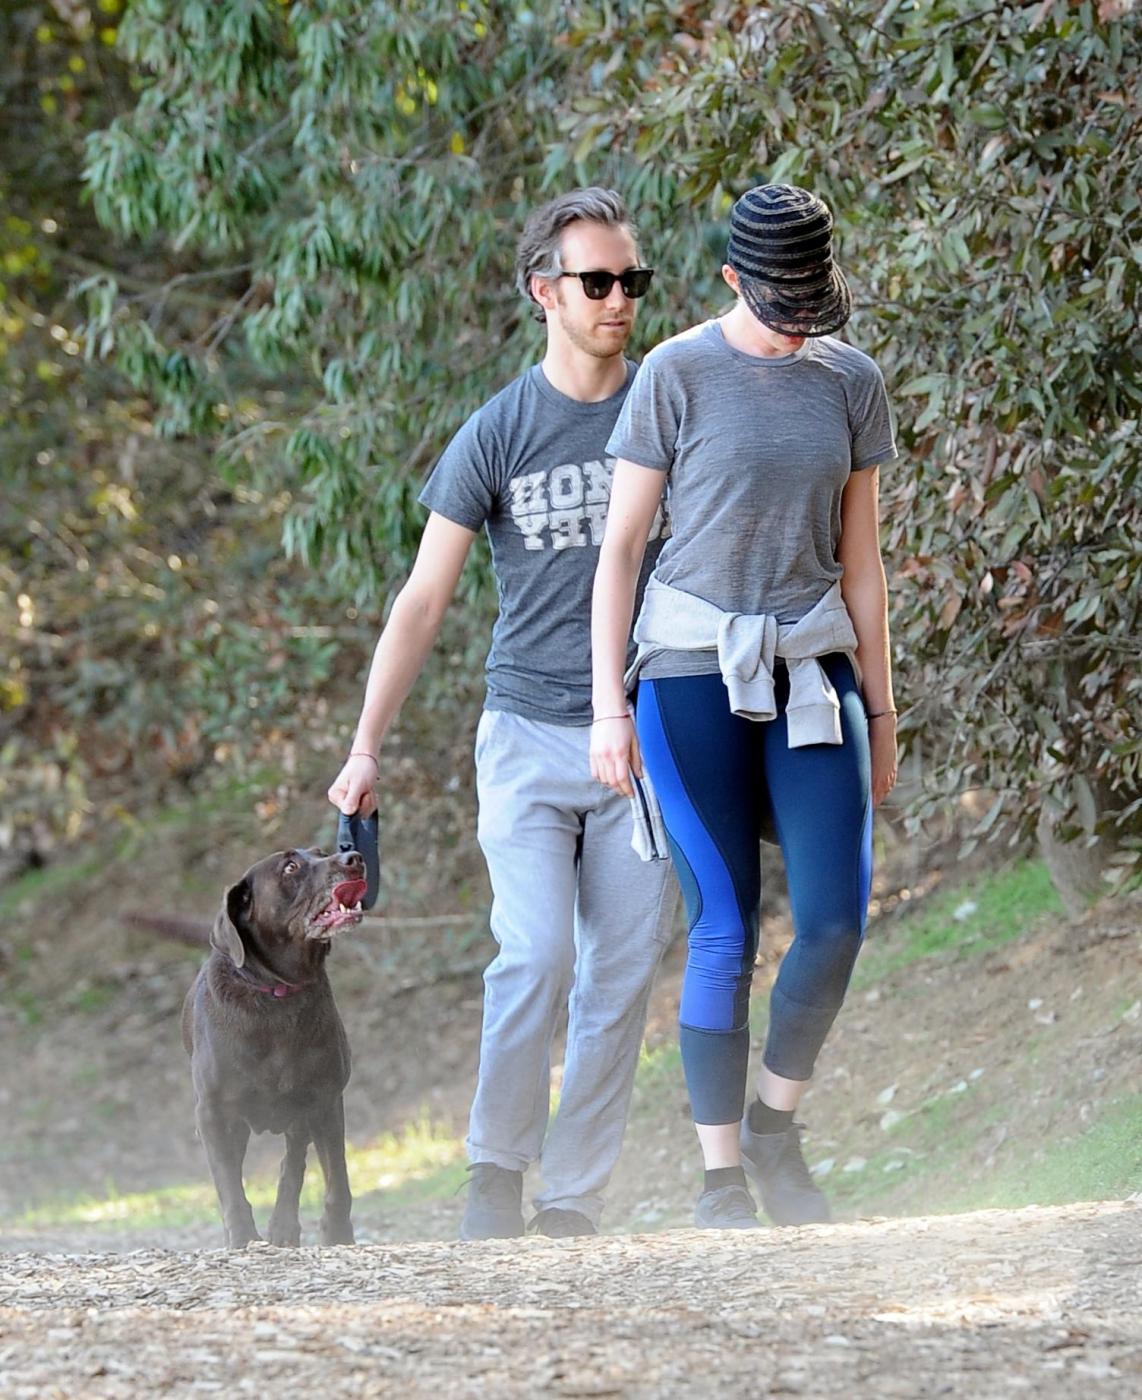 Anne Hathaway, jogging con il marito Adam Shulman02